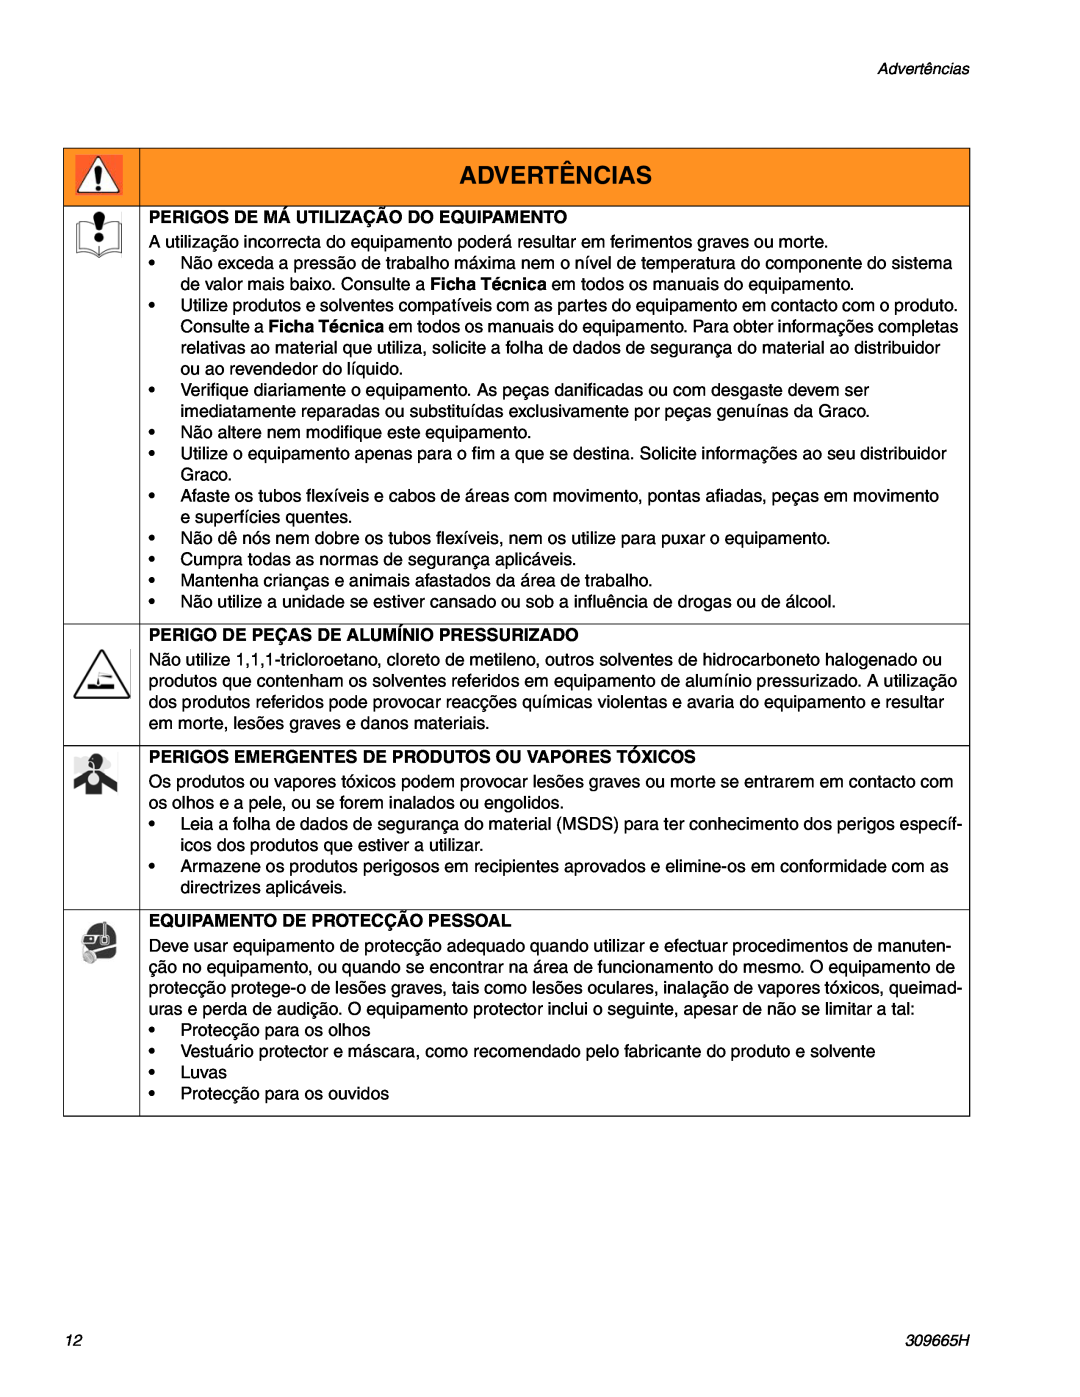 Graco UltraMax II 495 Perigos De Má Utilização Do Equipamento, Perigo De Peças De Alumínio Pressurizado, Advertências 